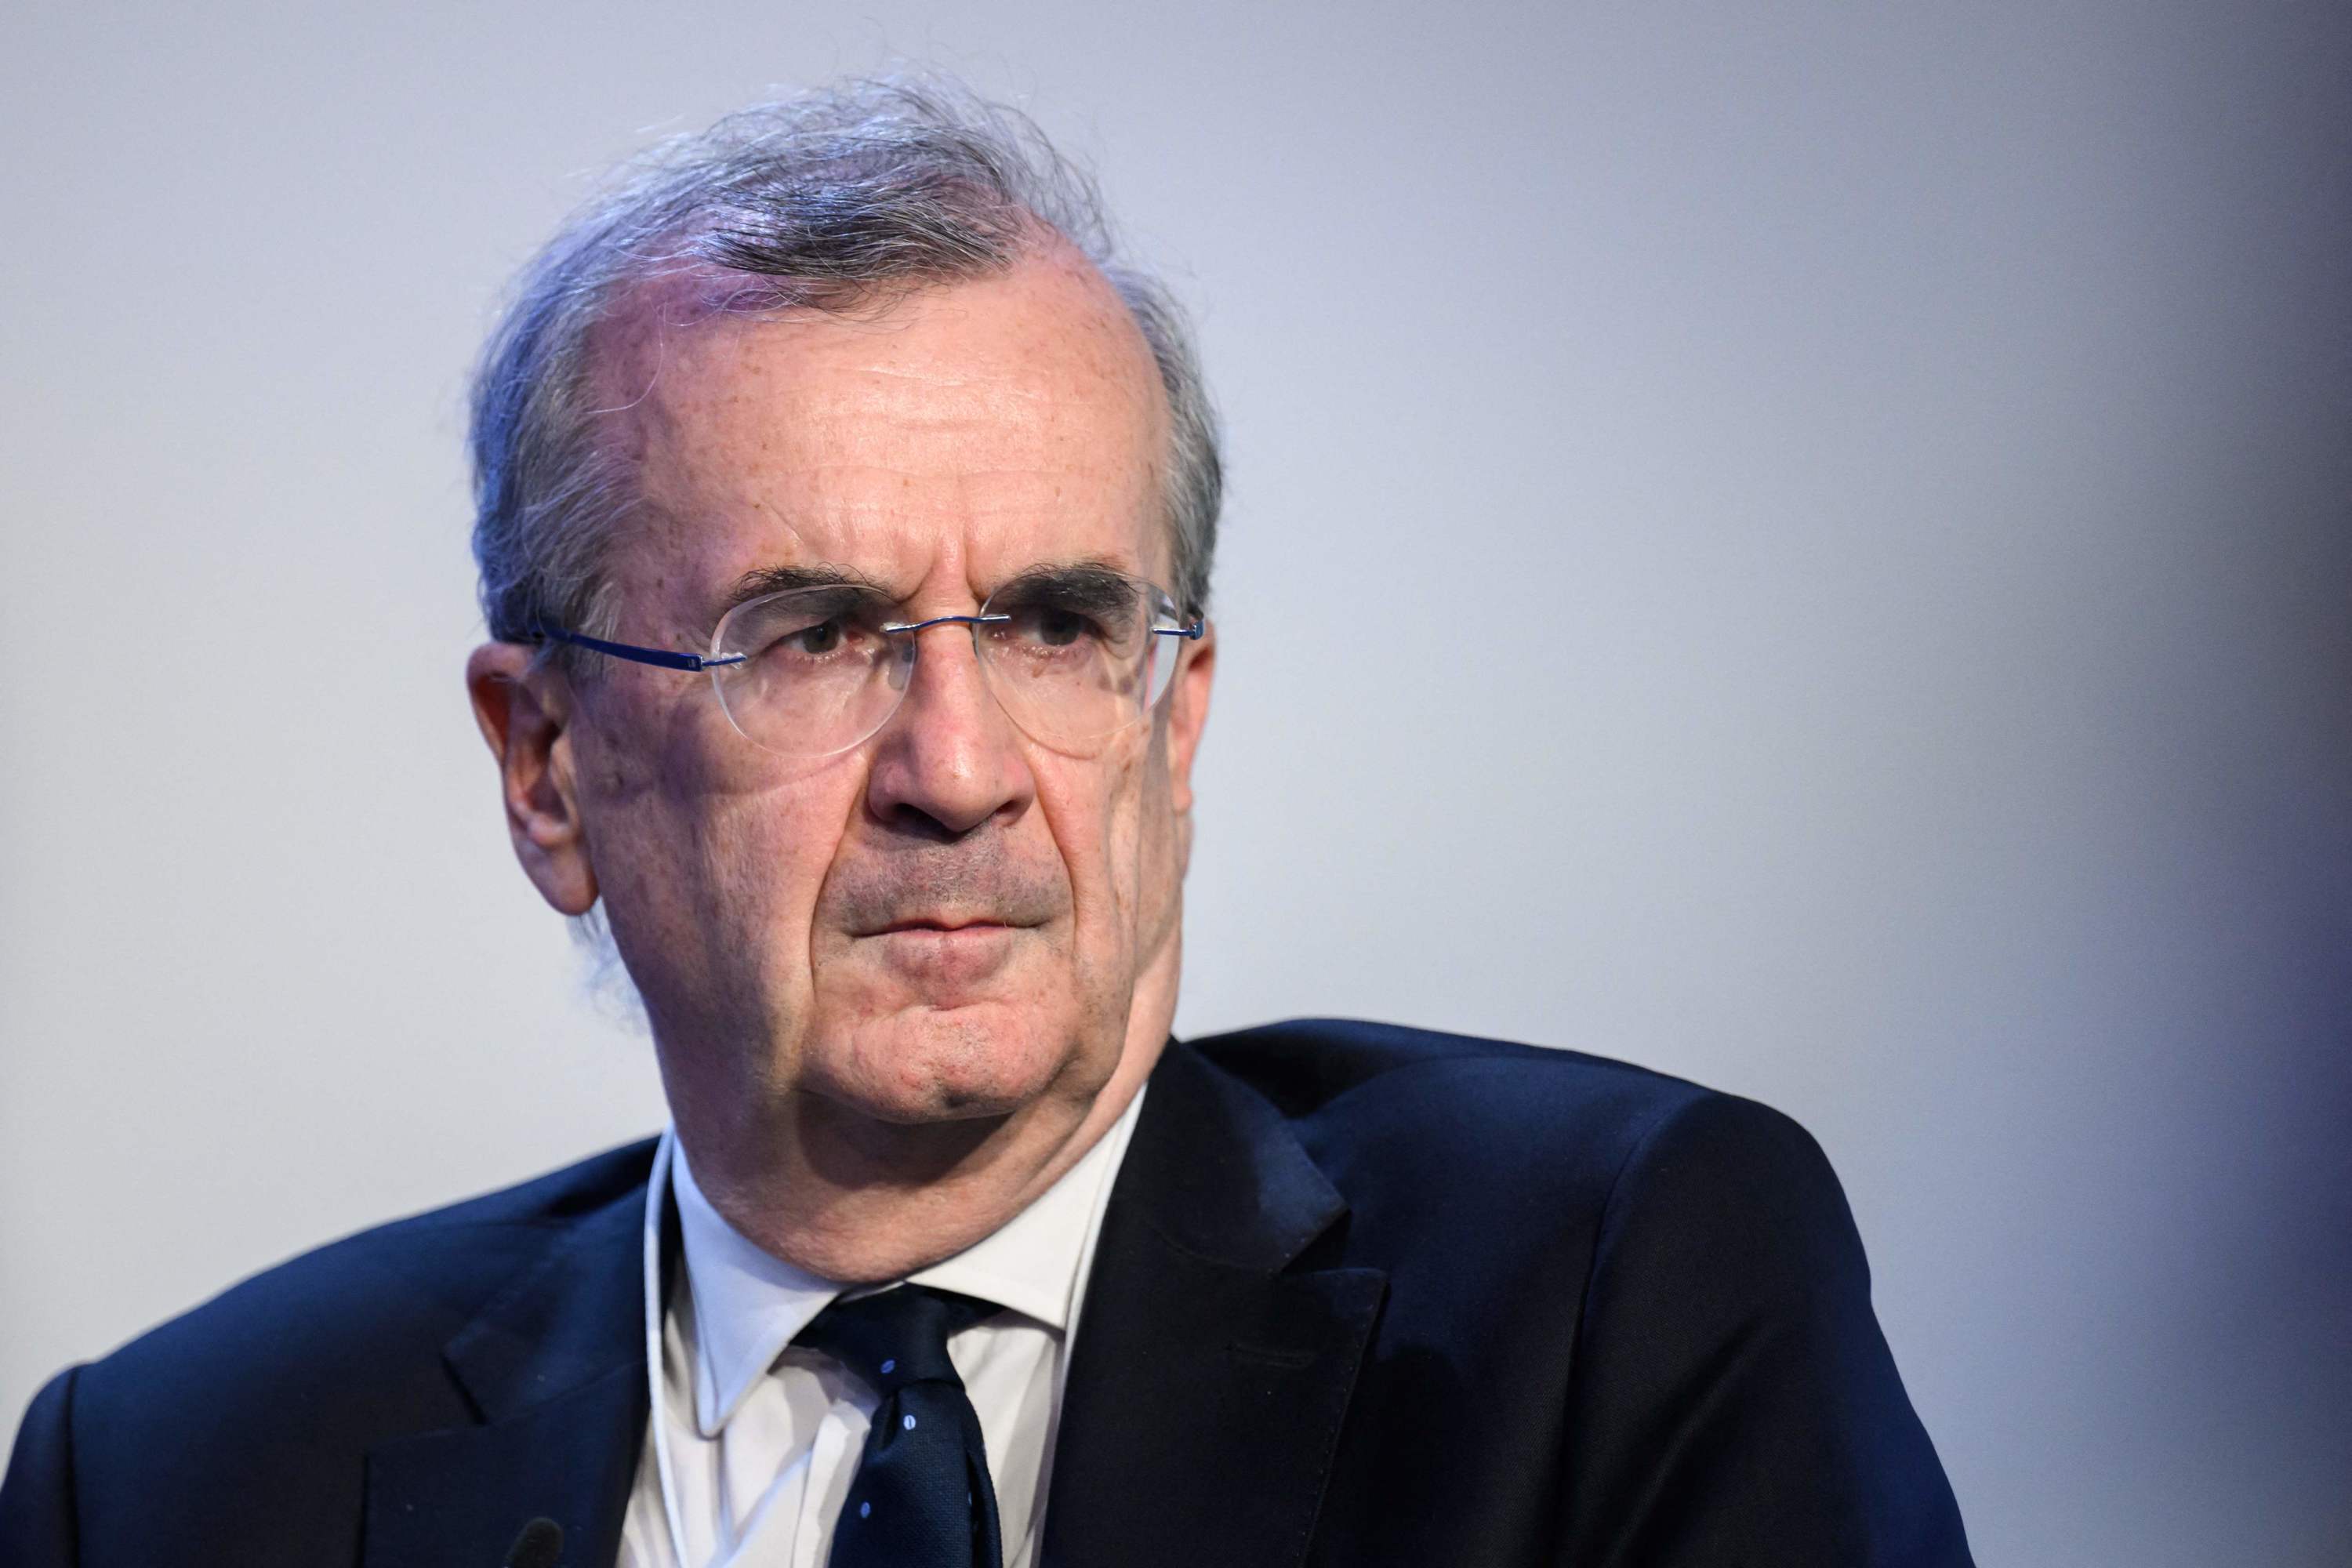 Le gouverneur de la Banque de France met en garde contre les coûts salariaux excessifs et les impôts trop lourds